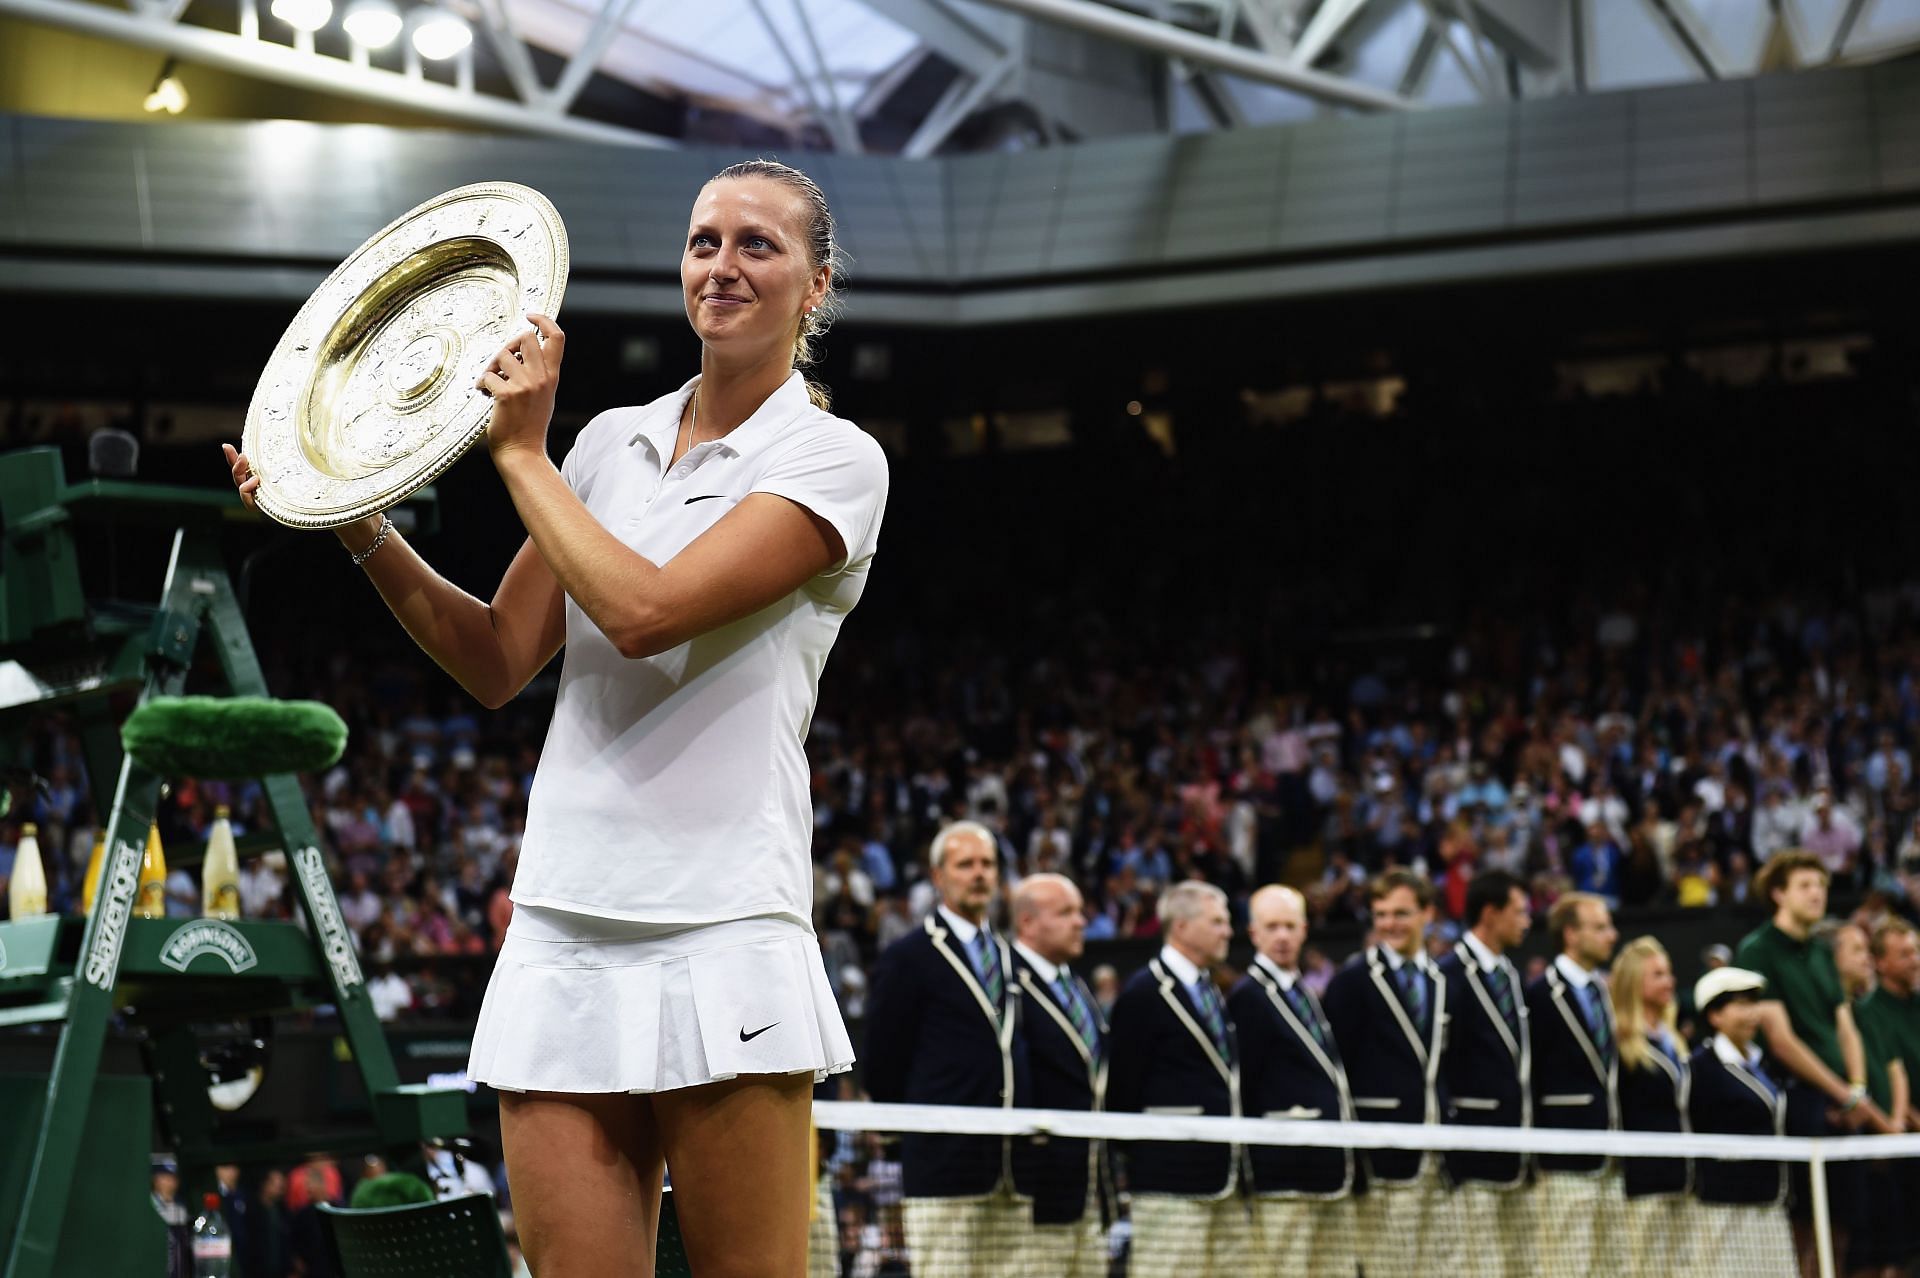 Petra Kvitova won the 2014 Wimbledon Championships.